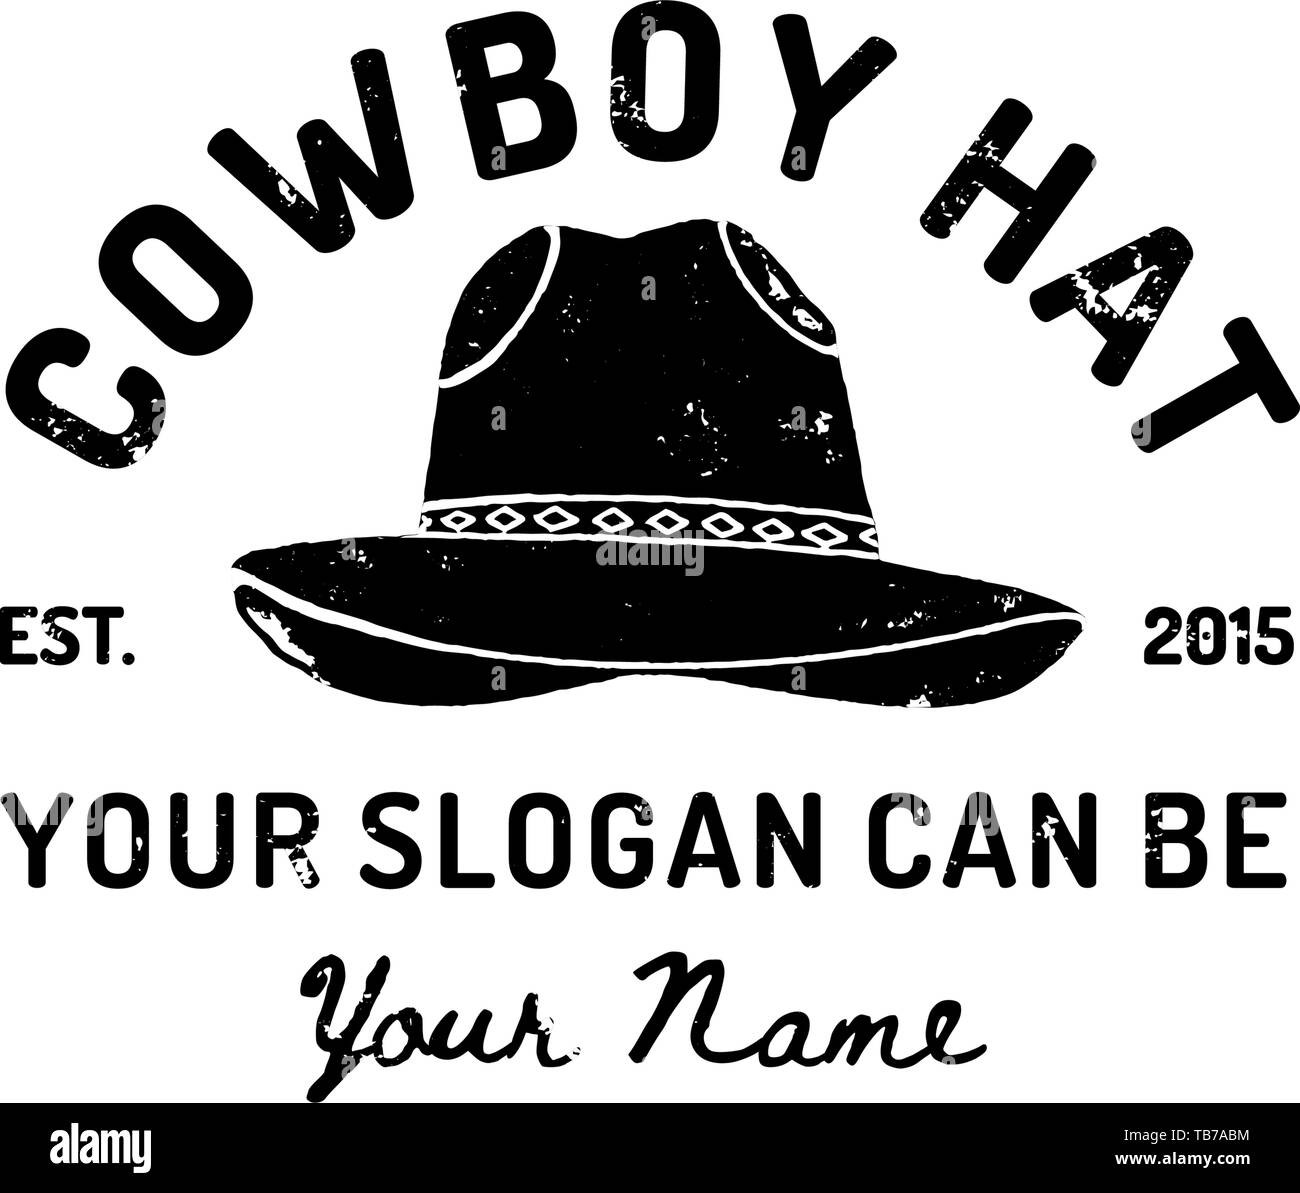 Vintage Western cappello da cowboy Logo. Simbolo del vettore del selvaggio West, Texas. Noi etichetta tipografia retrò stile grunge. Modello per la stampa, poster, t-shirt, coperchio, banner o altre attività Illustrazione Vettoriale